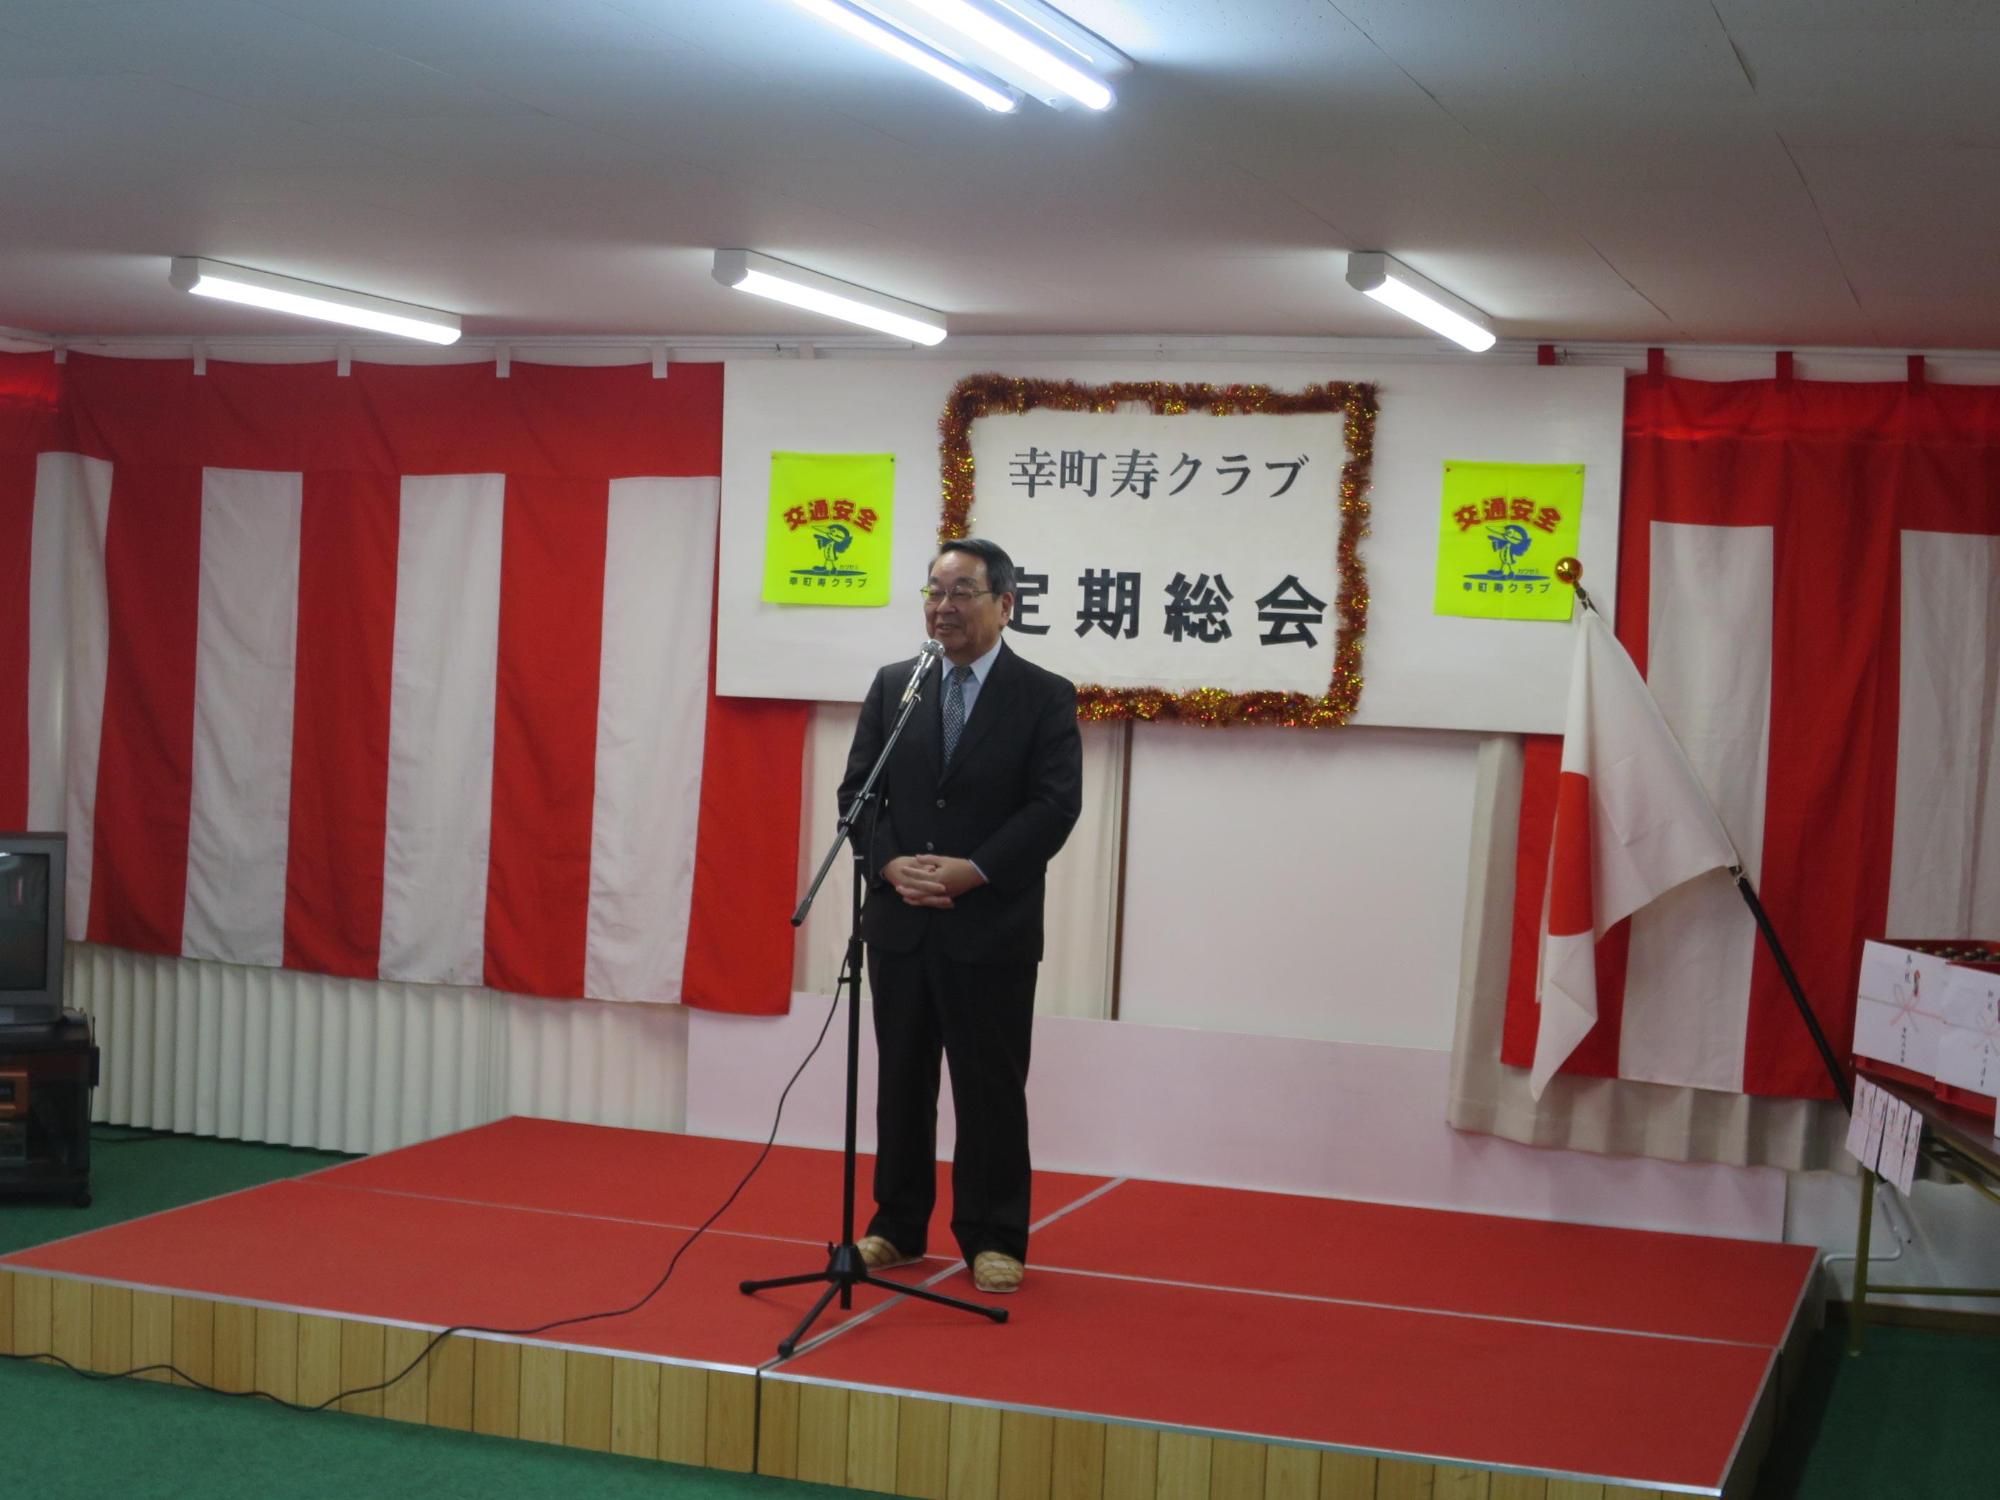 幸町寿クラブ定期総会にて挨拶をしている原田市長の写真